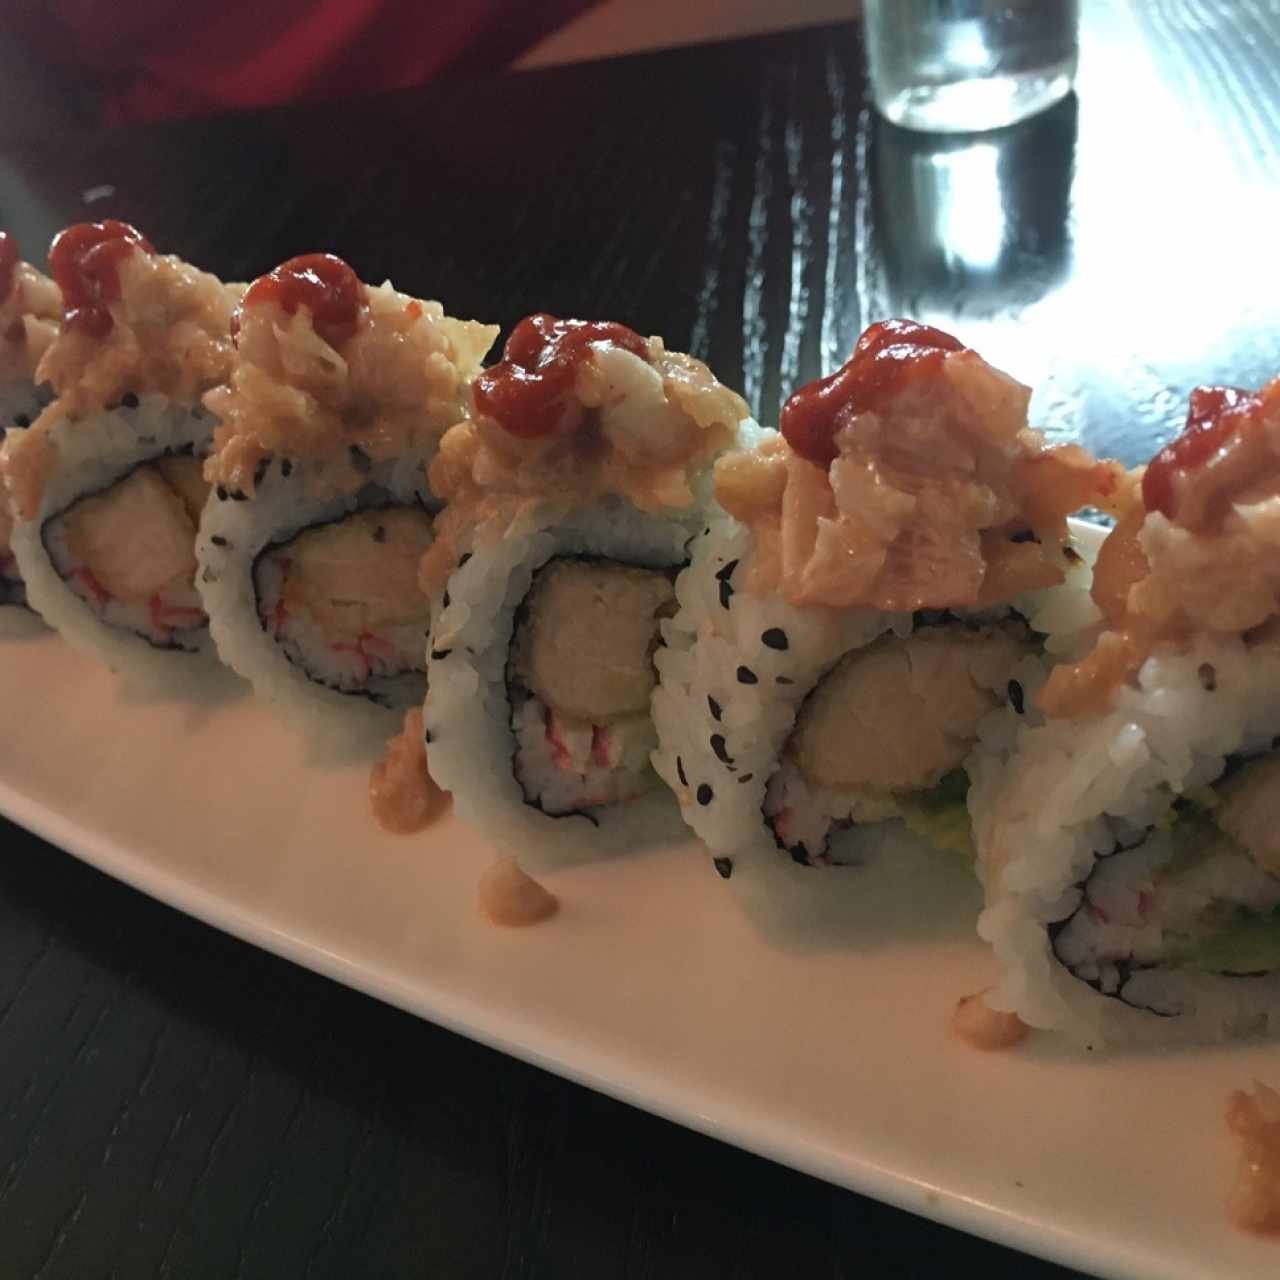 Sushi Rolls - Hiroshima Roll